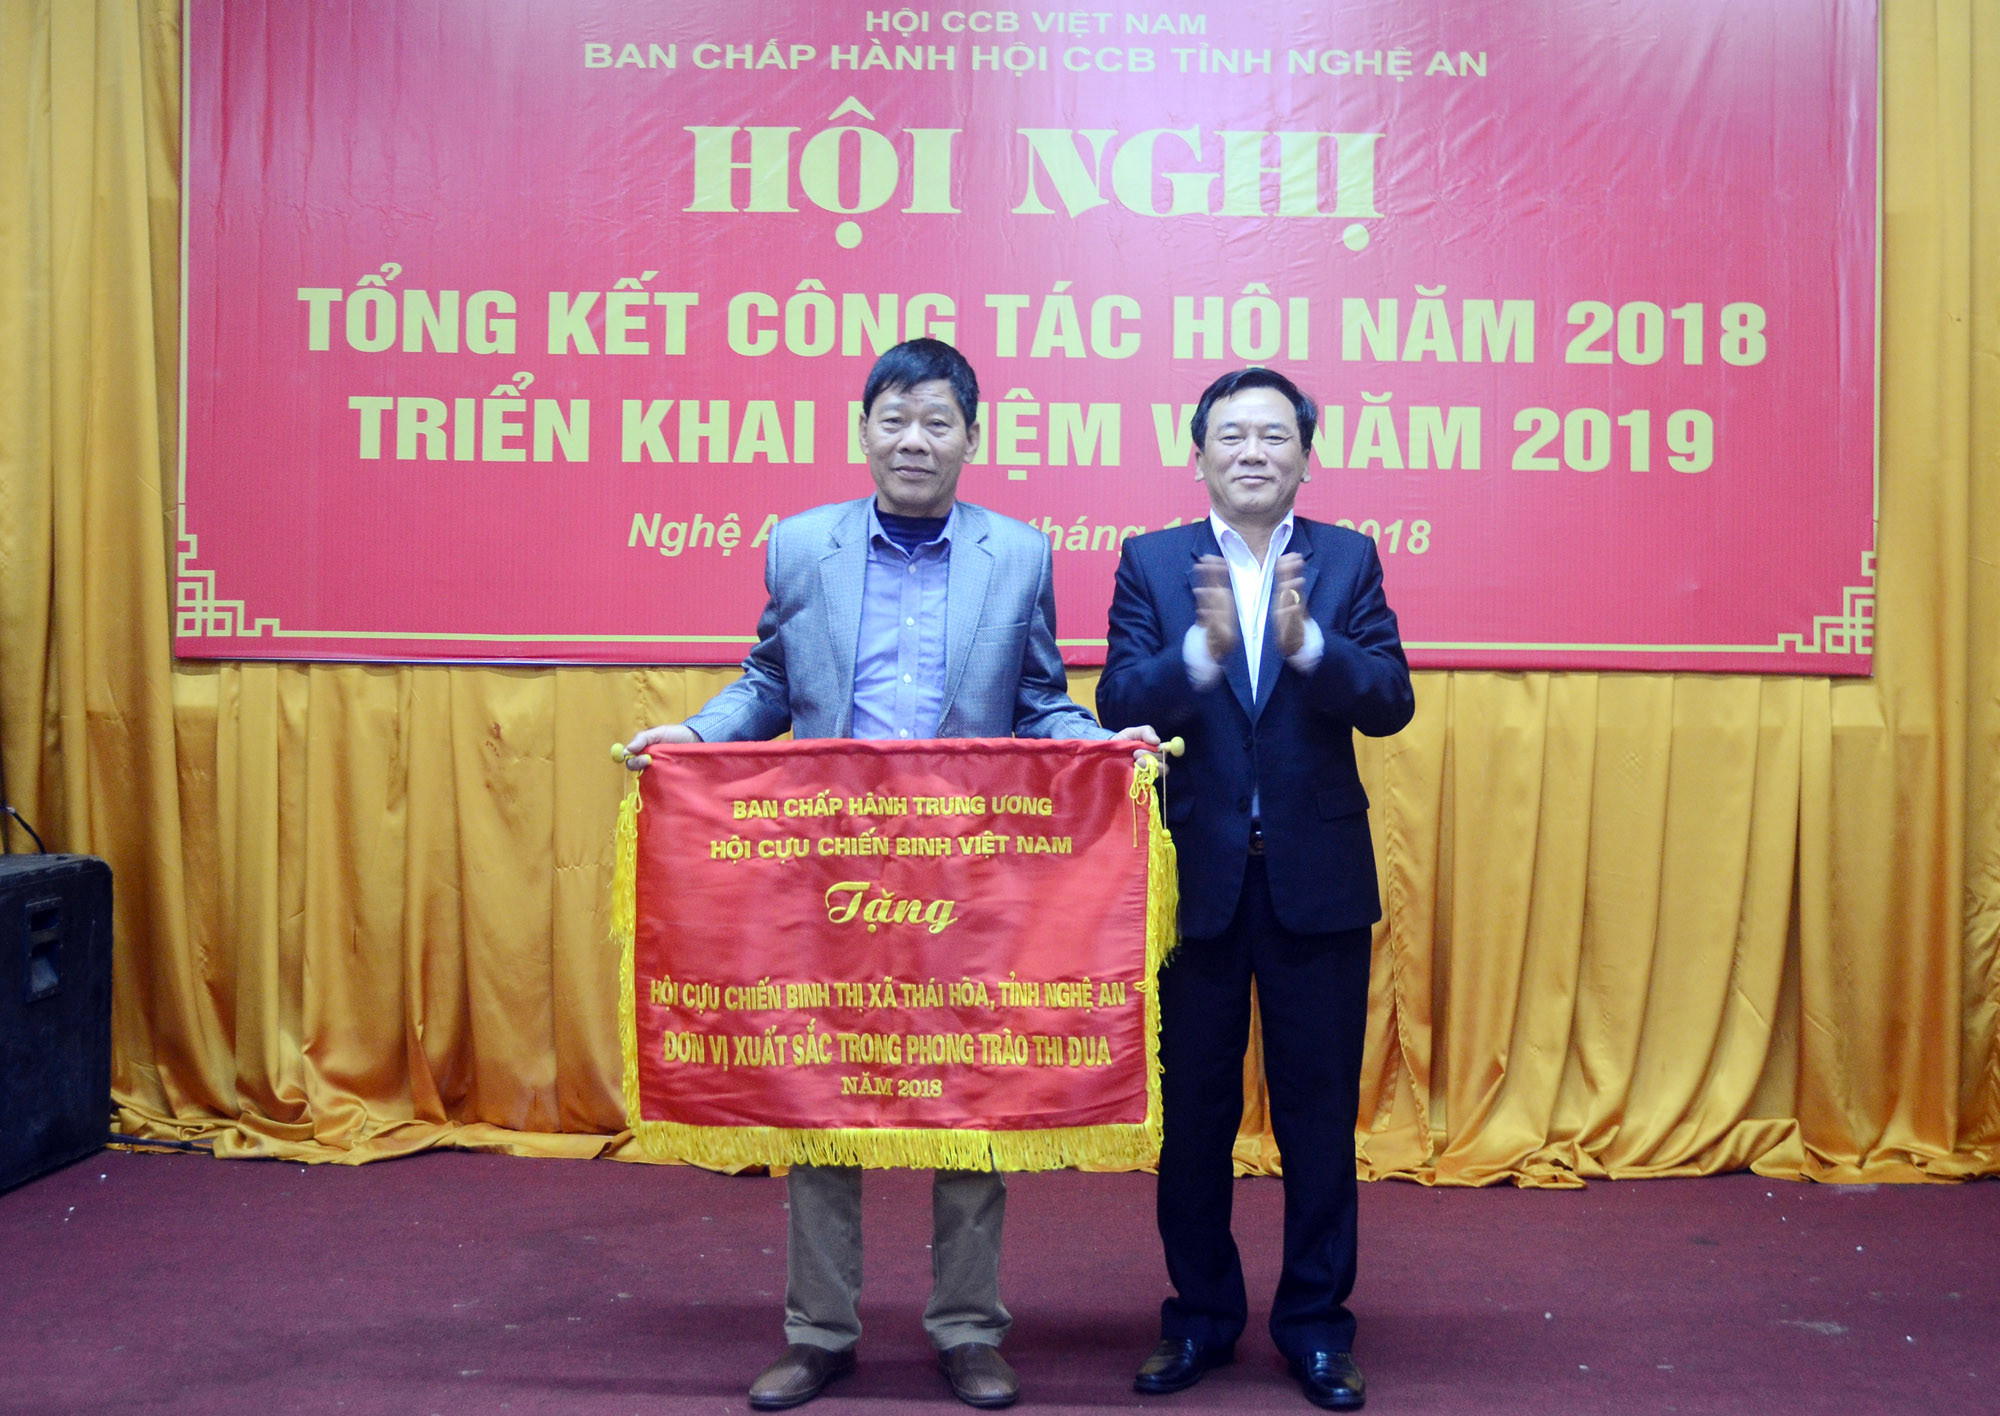 Trao cờ thi đua xuất sắc của Hội Cựu chiến binh Việt Nam cho 6 hội cơ sở thuộc Hội Cựu chiến binh tỉnh Nghệ An. Ảnh: Thành Chung